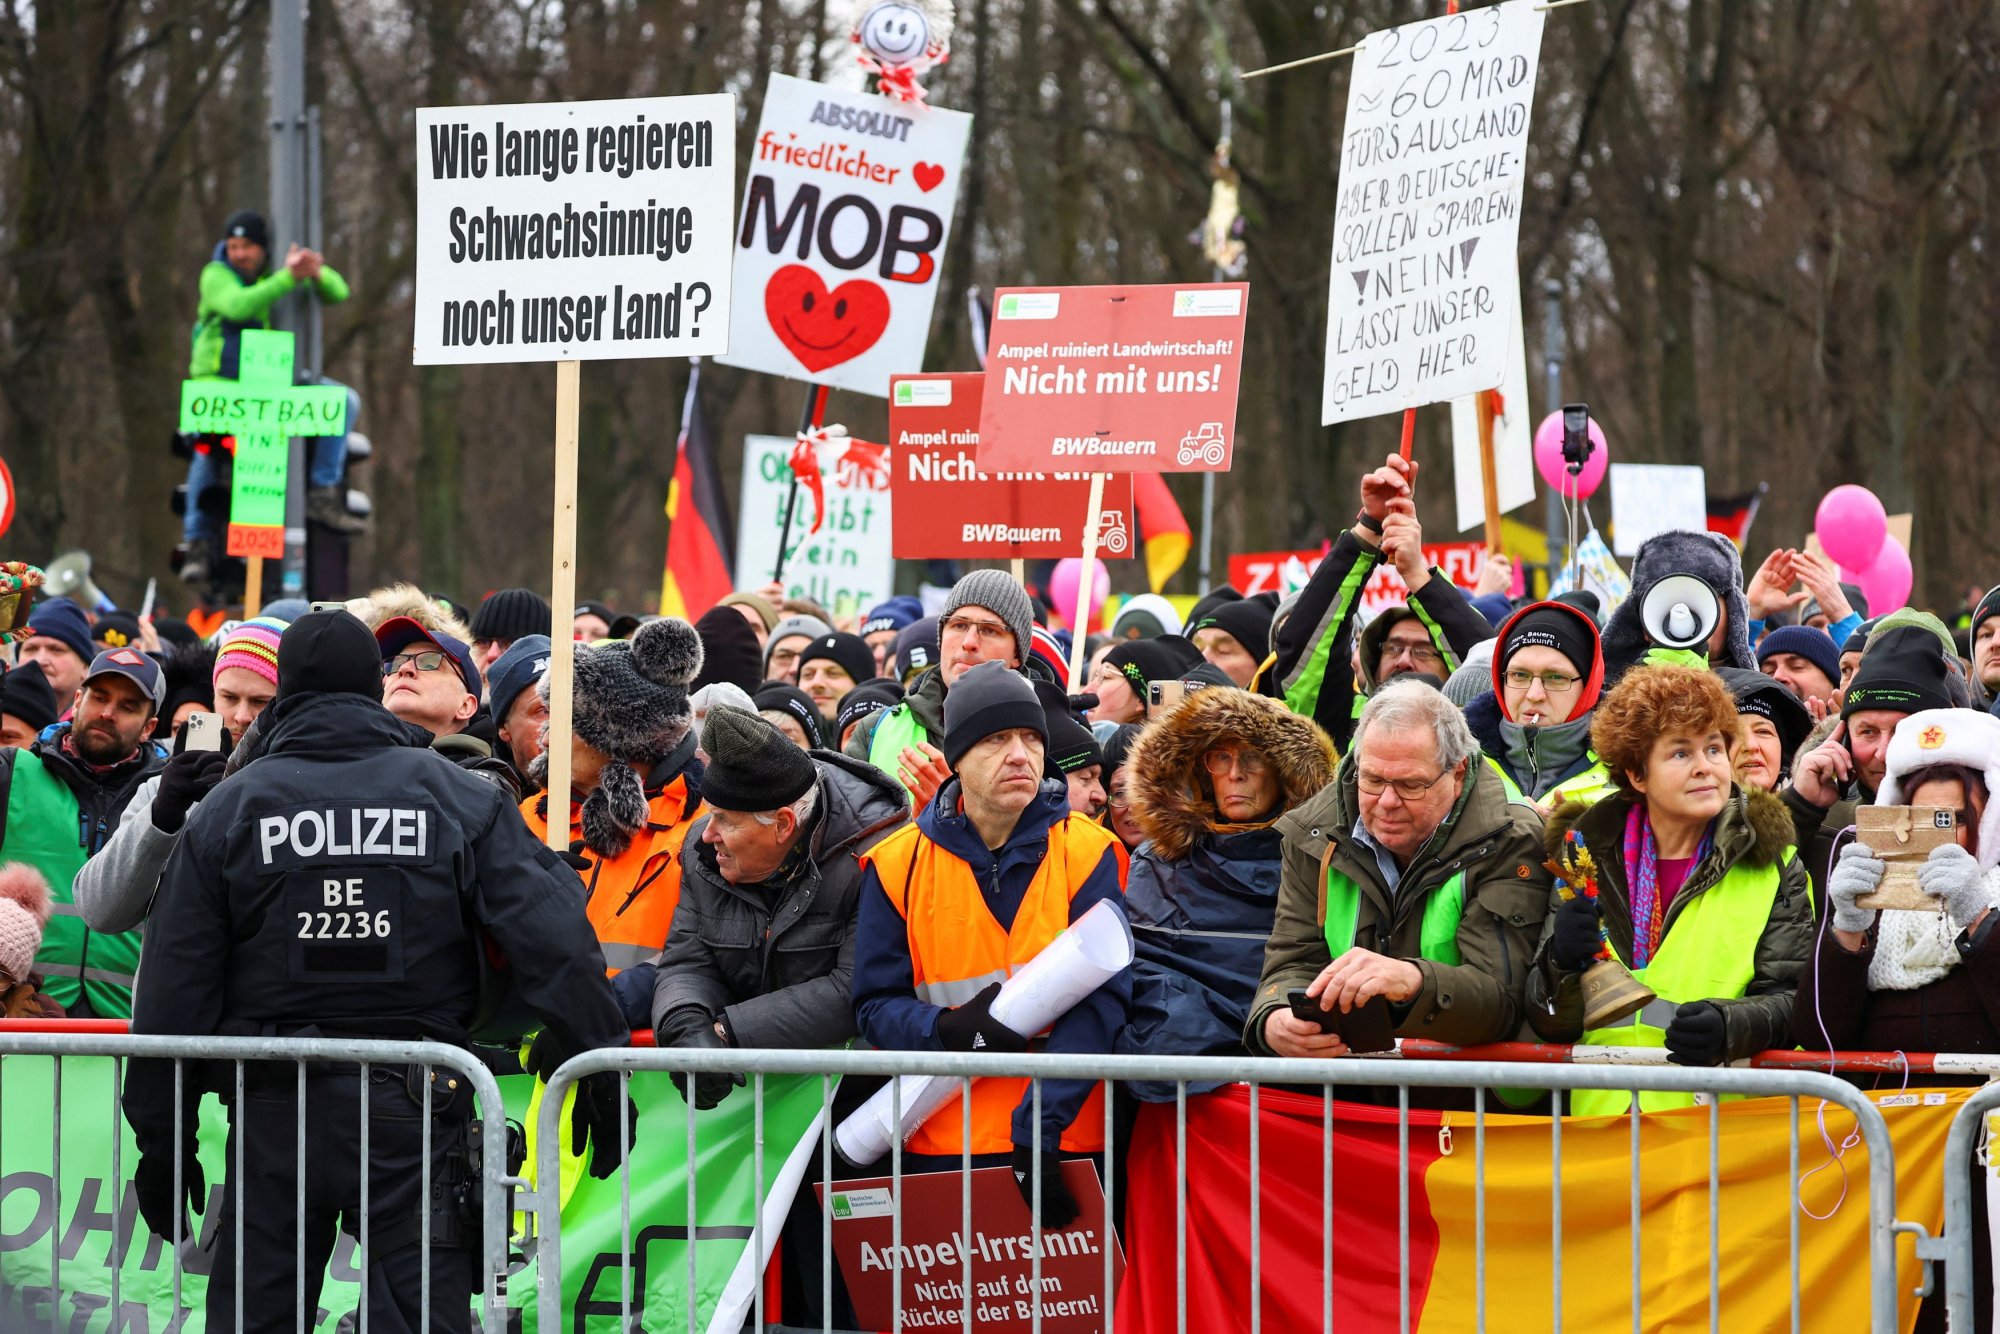 Οι διαμαρτυρίες των αγροτών στην Ευρώπη και το παιχνίδι της ακροδεξιάς 